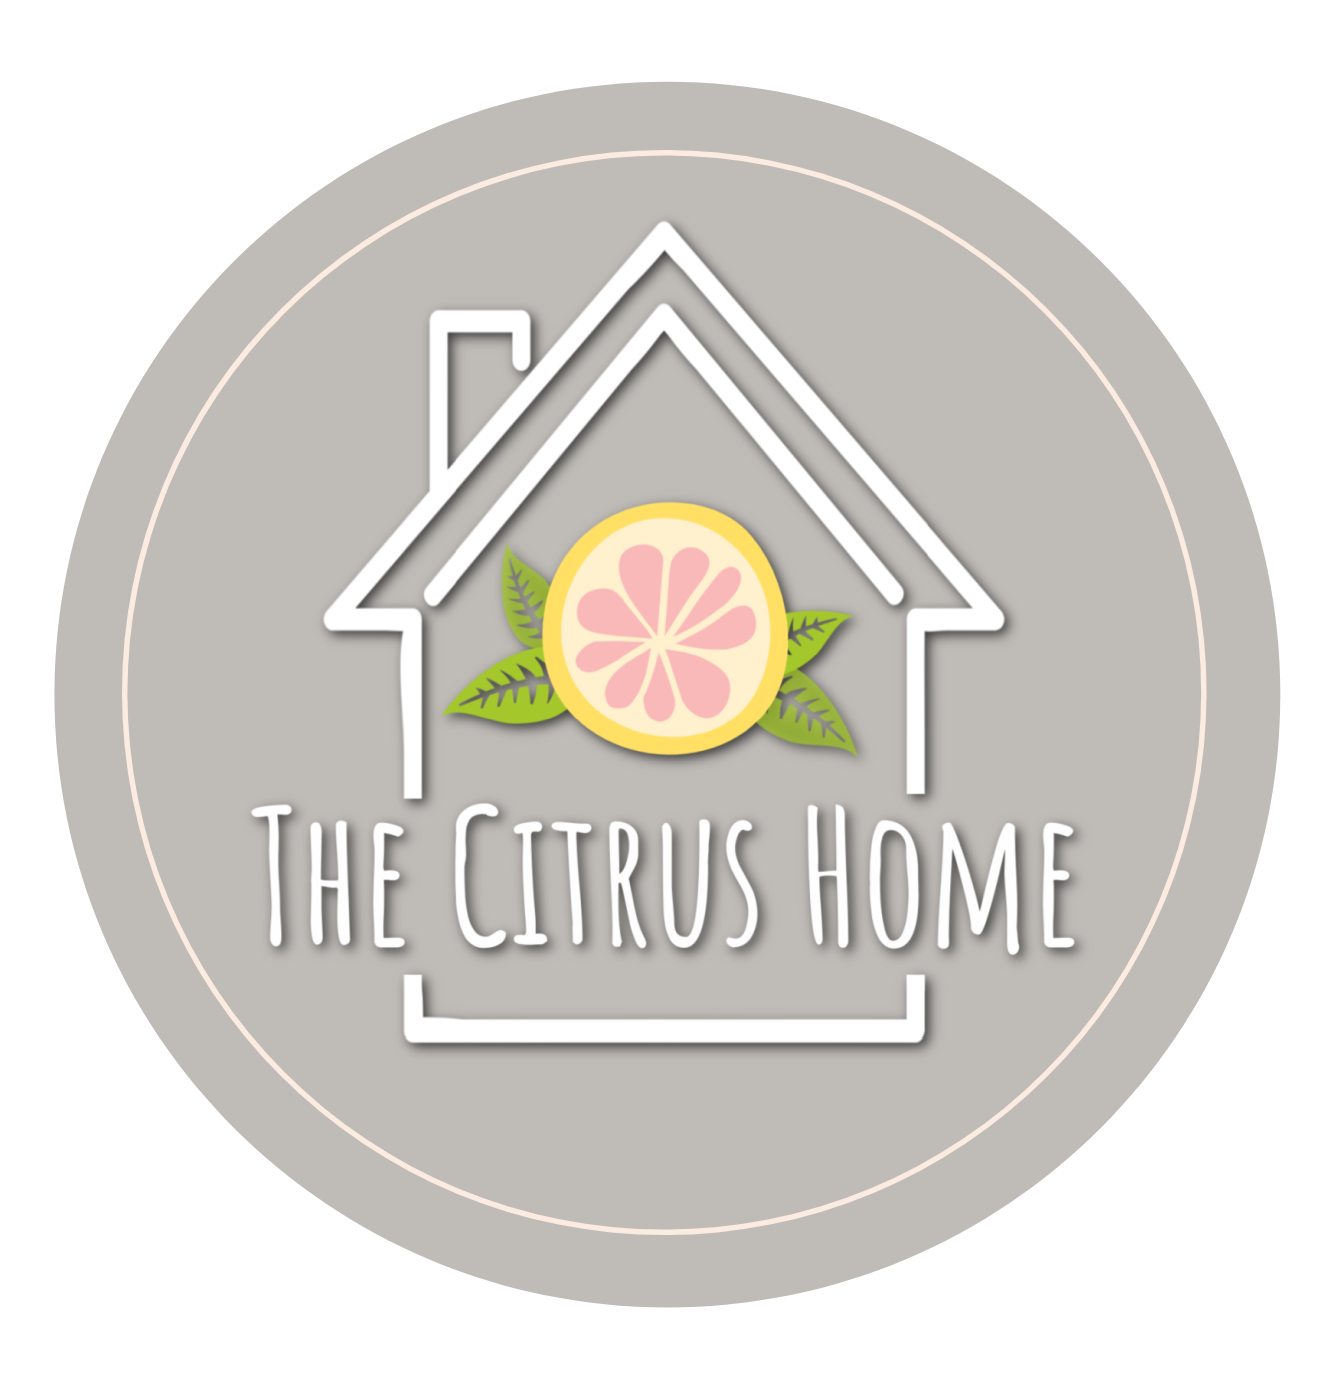 The Citrus Home LLC